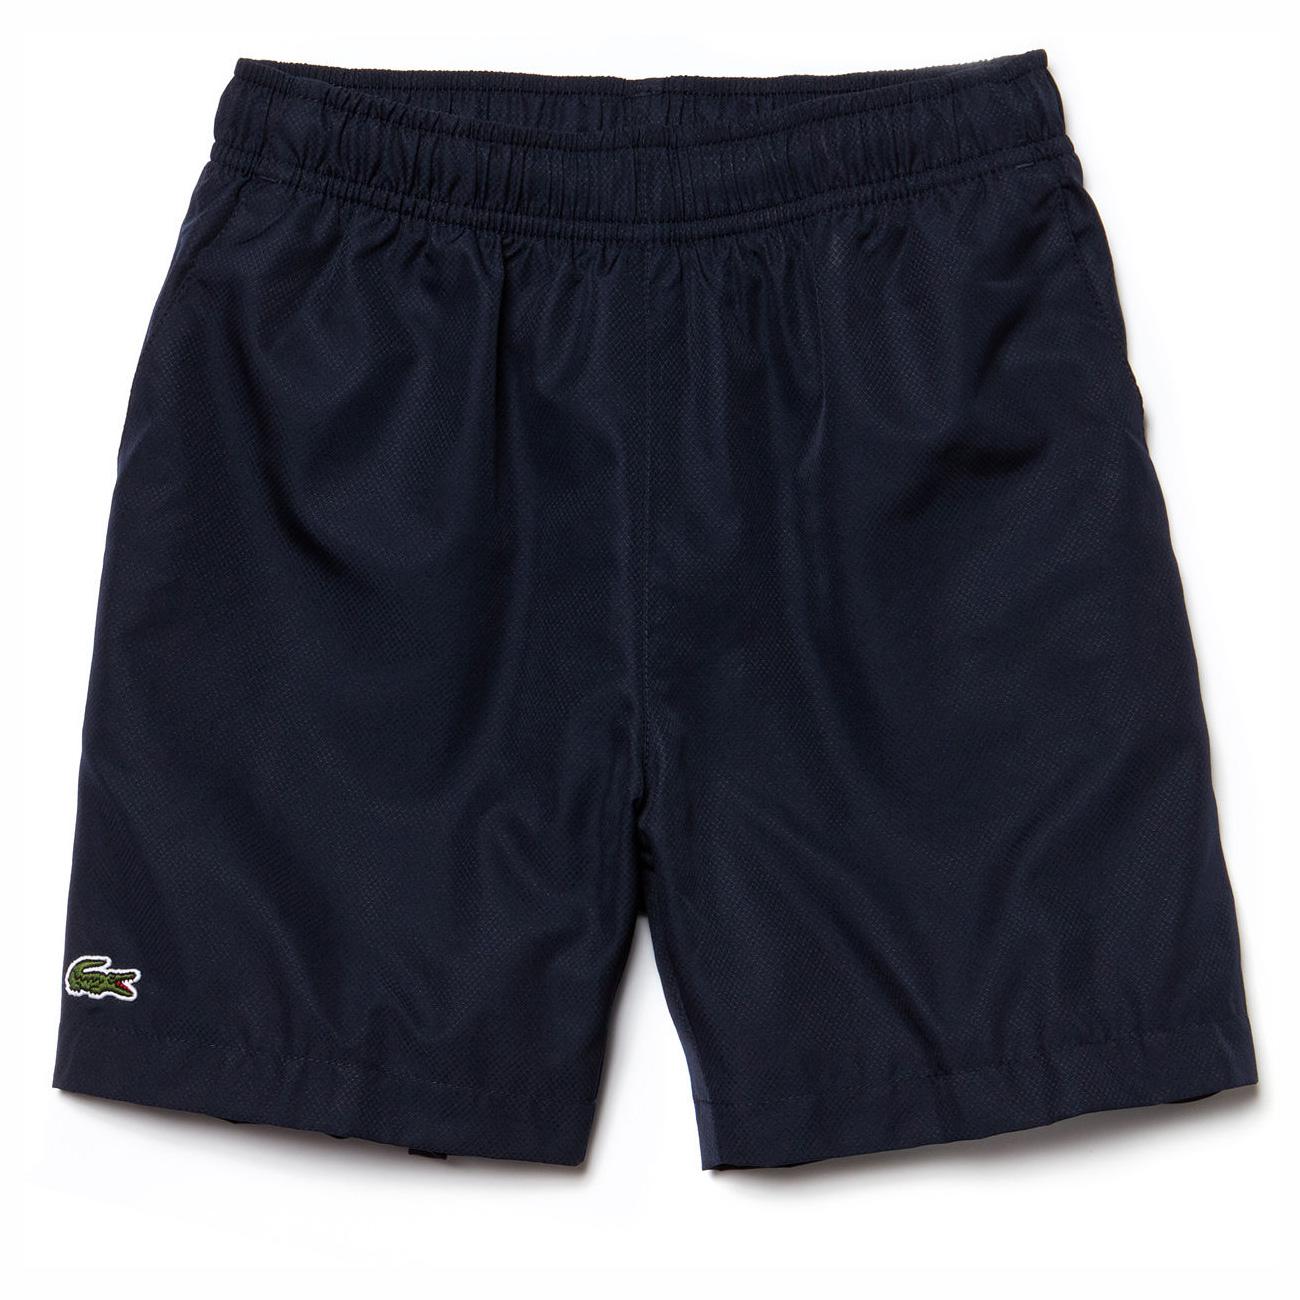 Lacoste Boys Tennis Shorts - Navy Blue - Tennisnuts.com